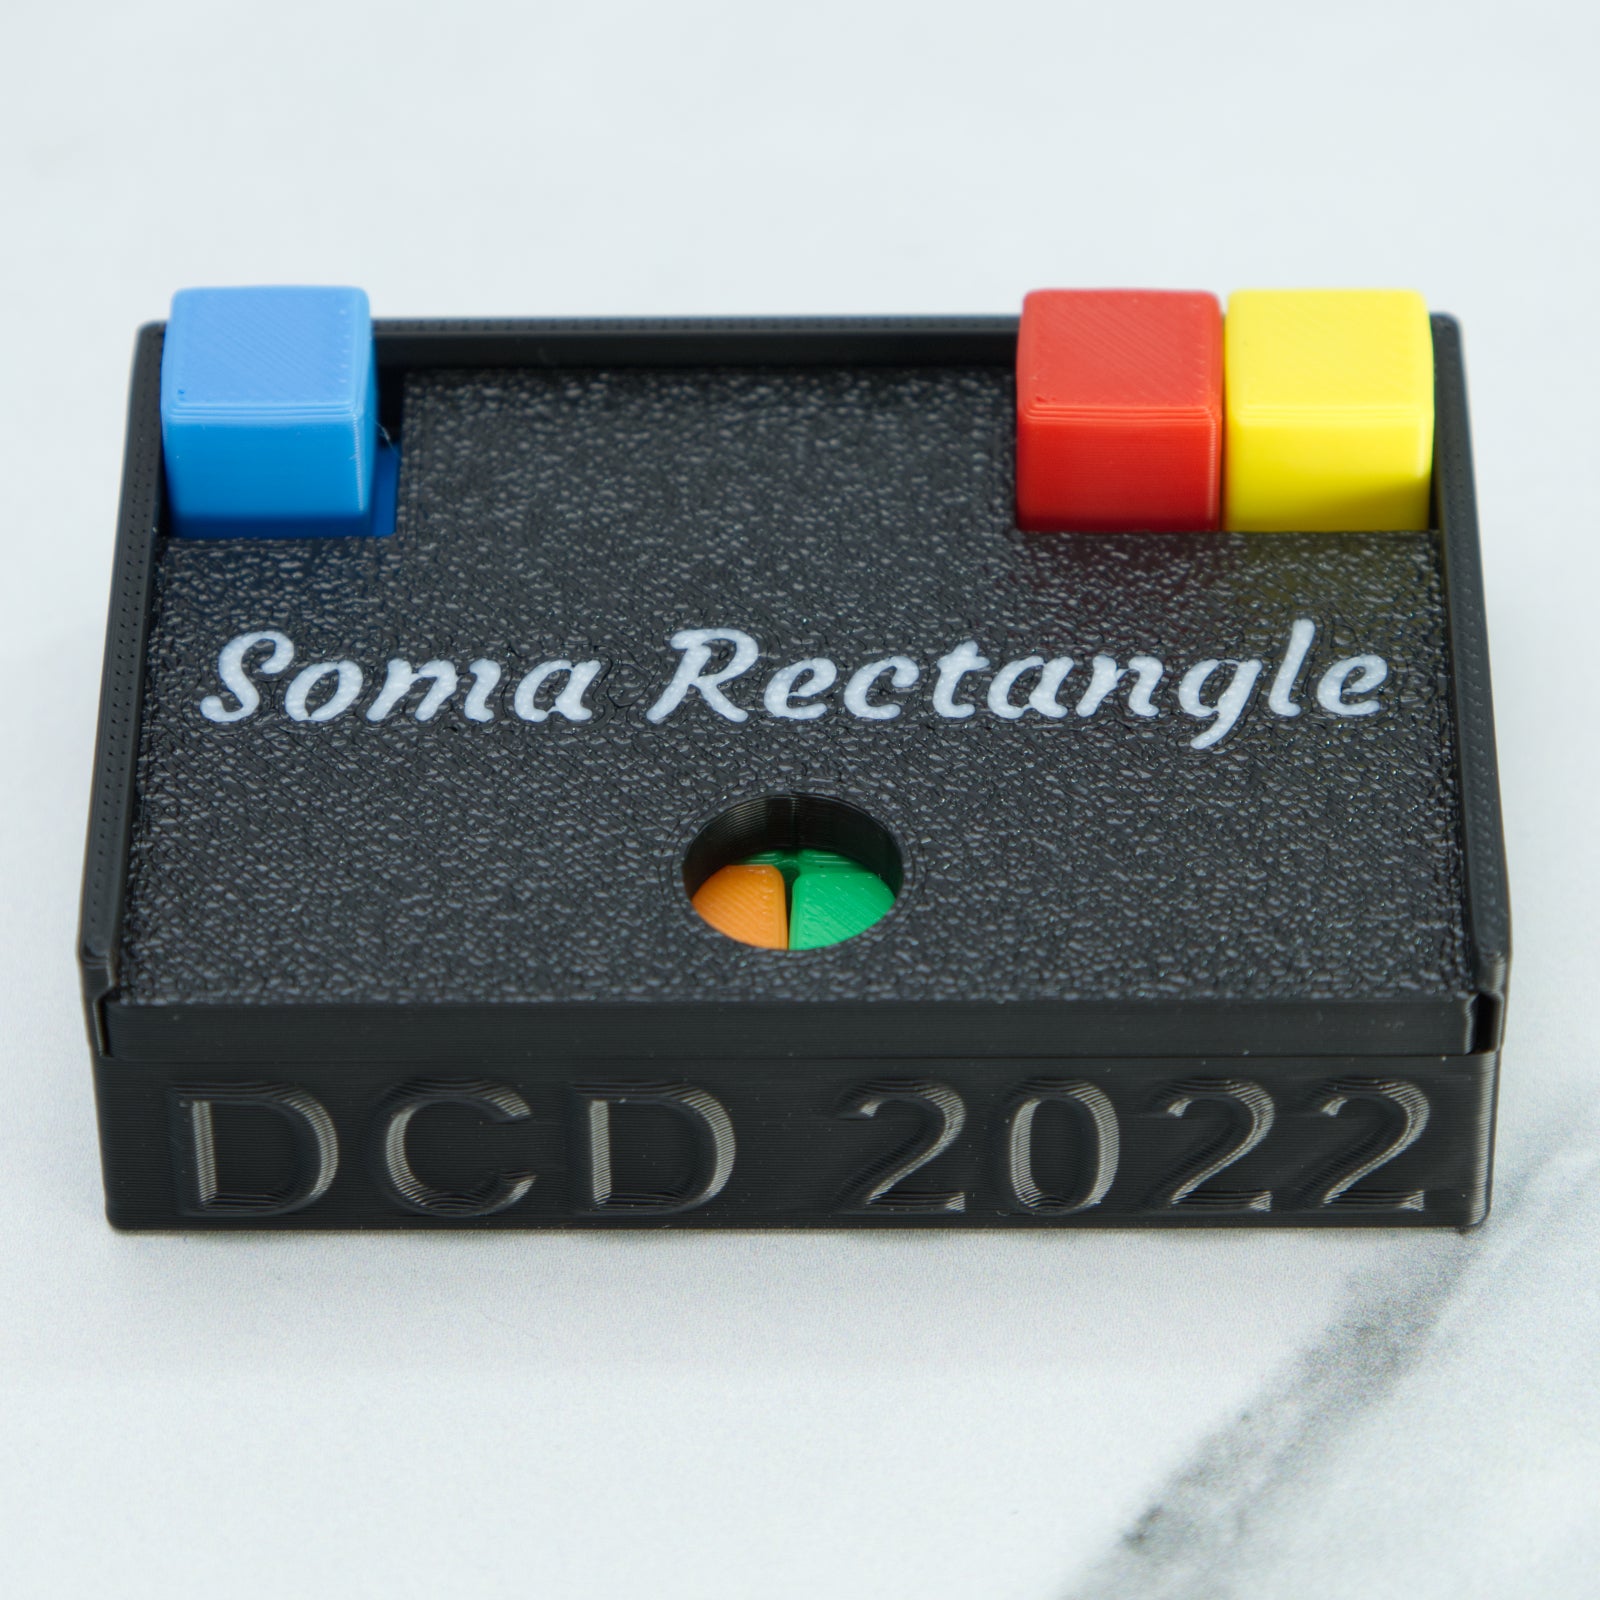 Soma Rectangle (DCD 2022) - Level Varies - Oskar van Deventer - Team JB Hobbies